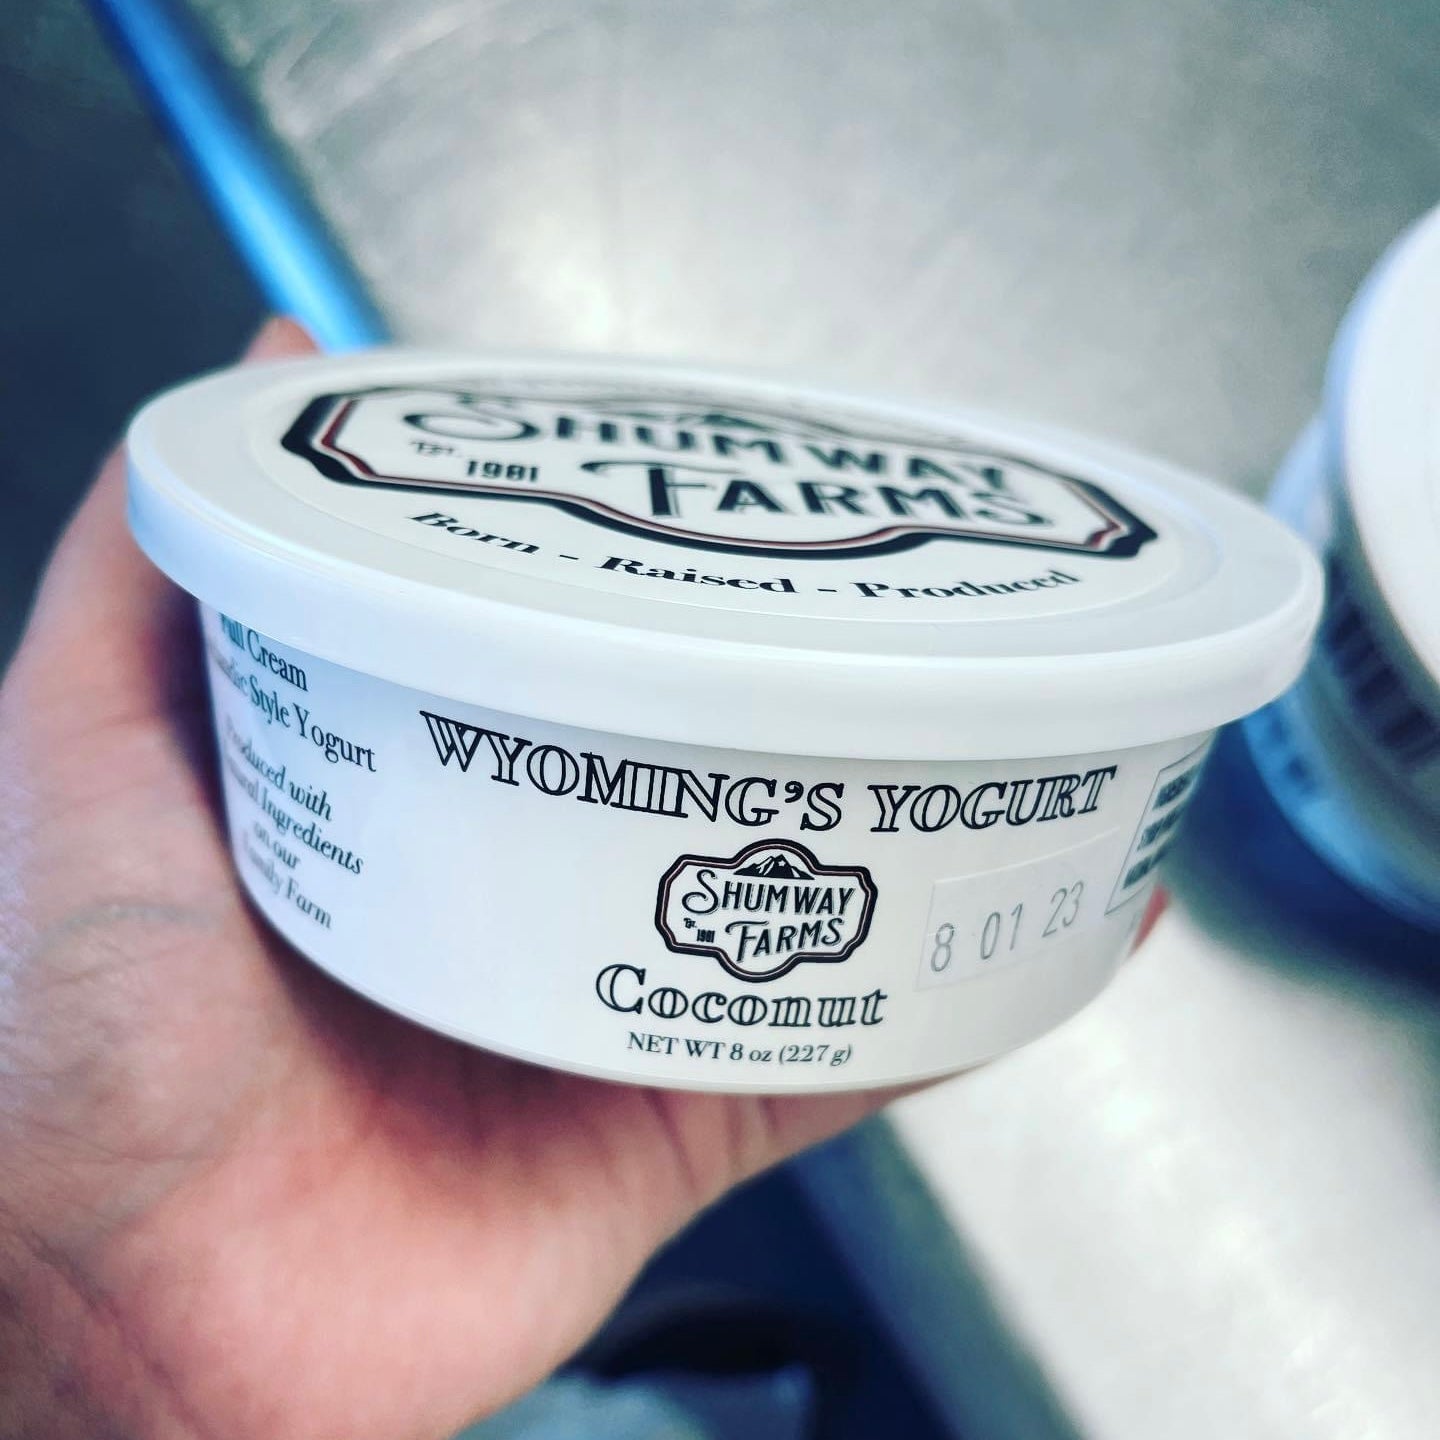 Shumway farms skyr yogurt